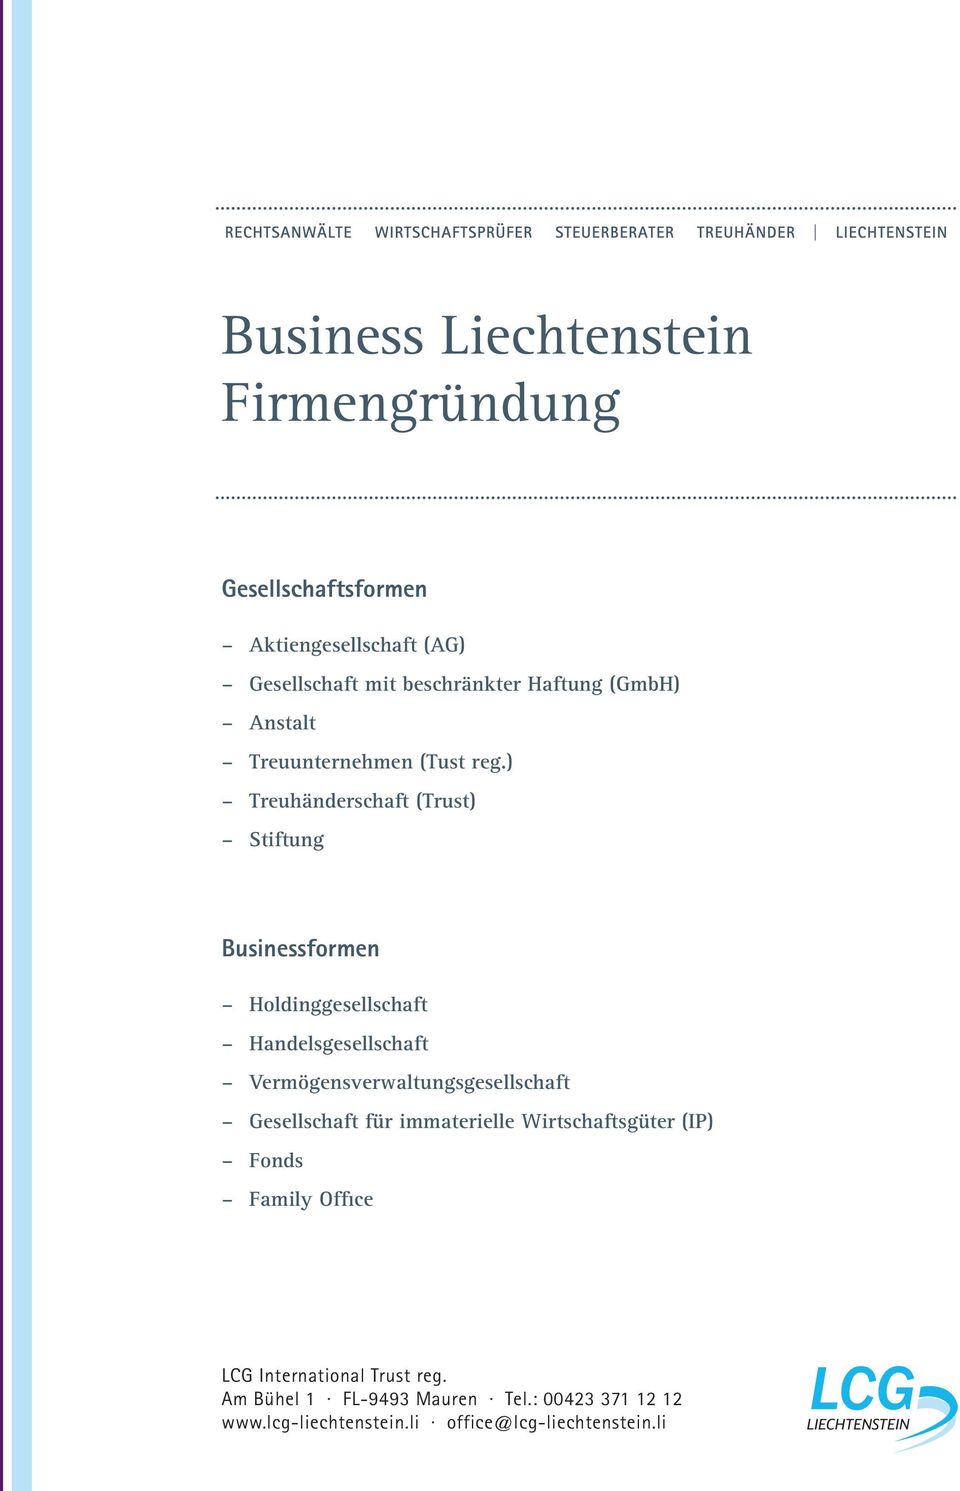 ) Treuhänderschaft (Trust) Stiftung Businessformen Holdinggesellschaft Handelsgesellschaft